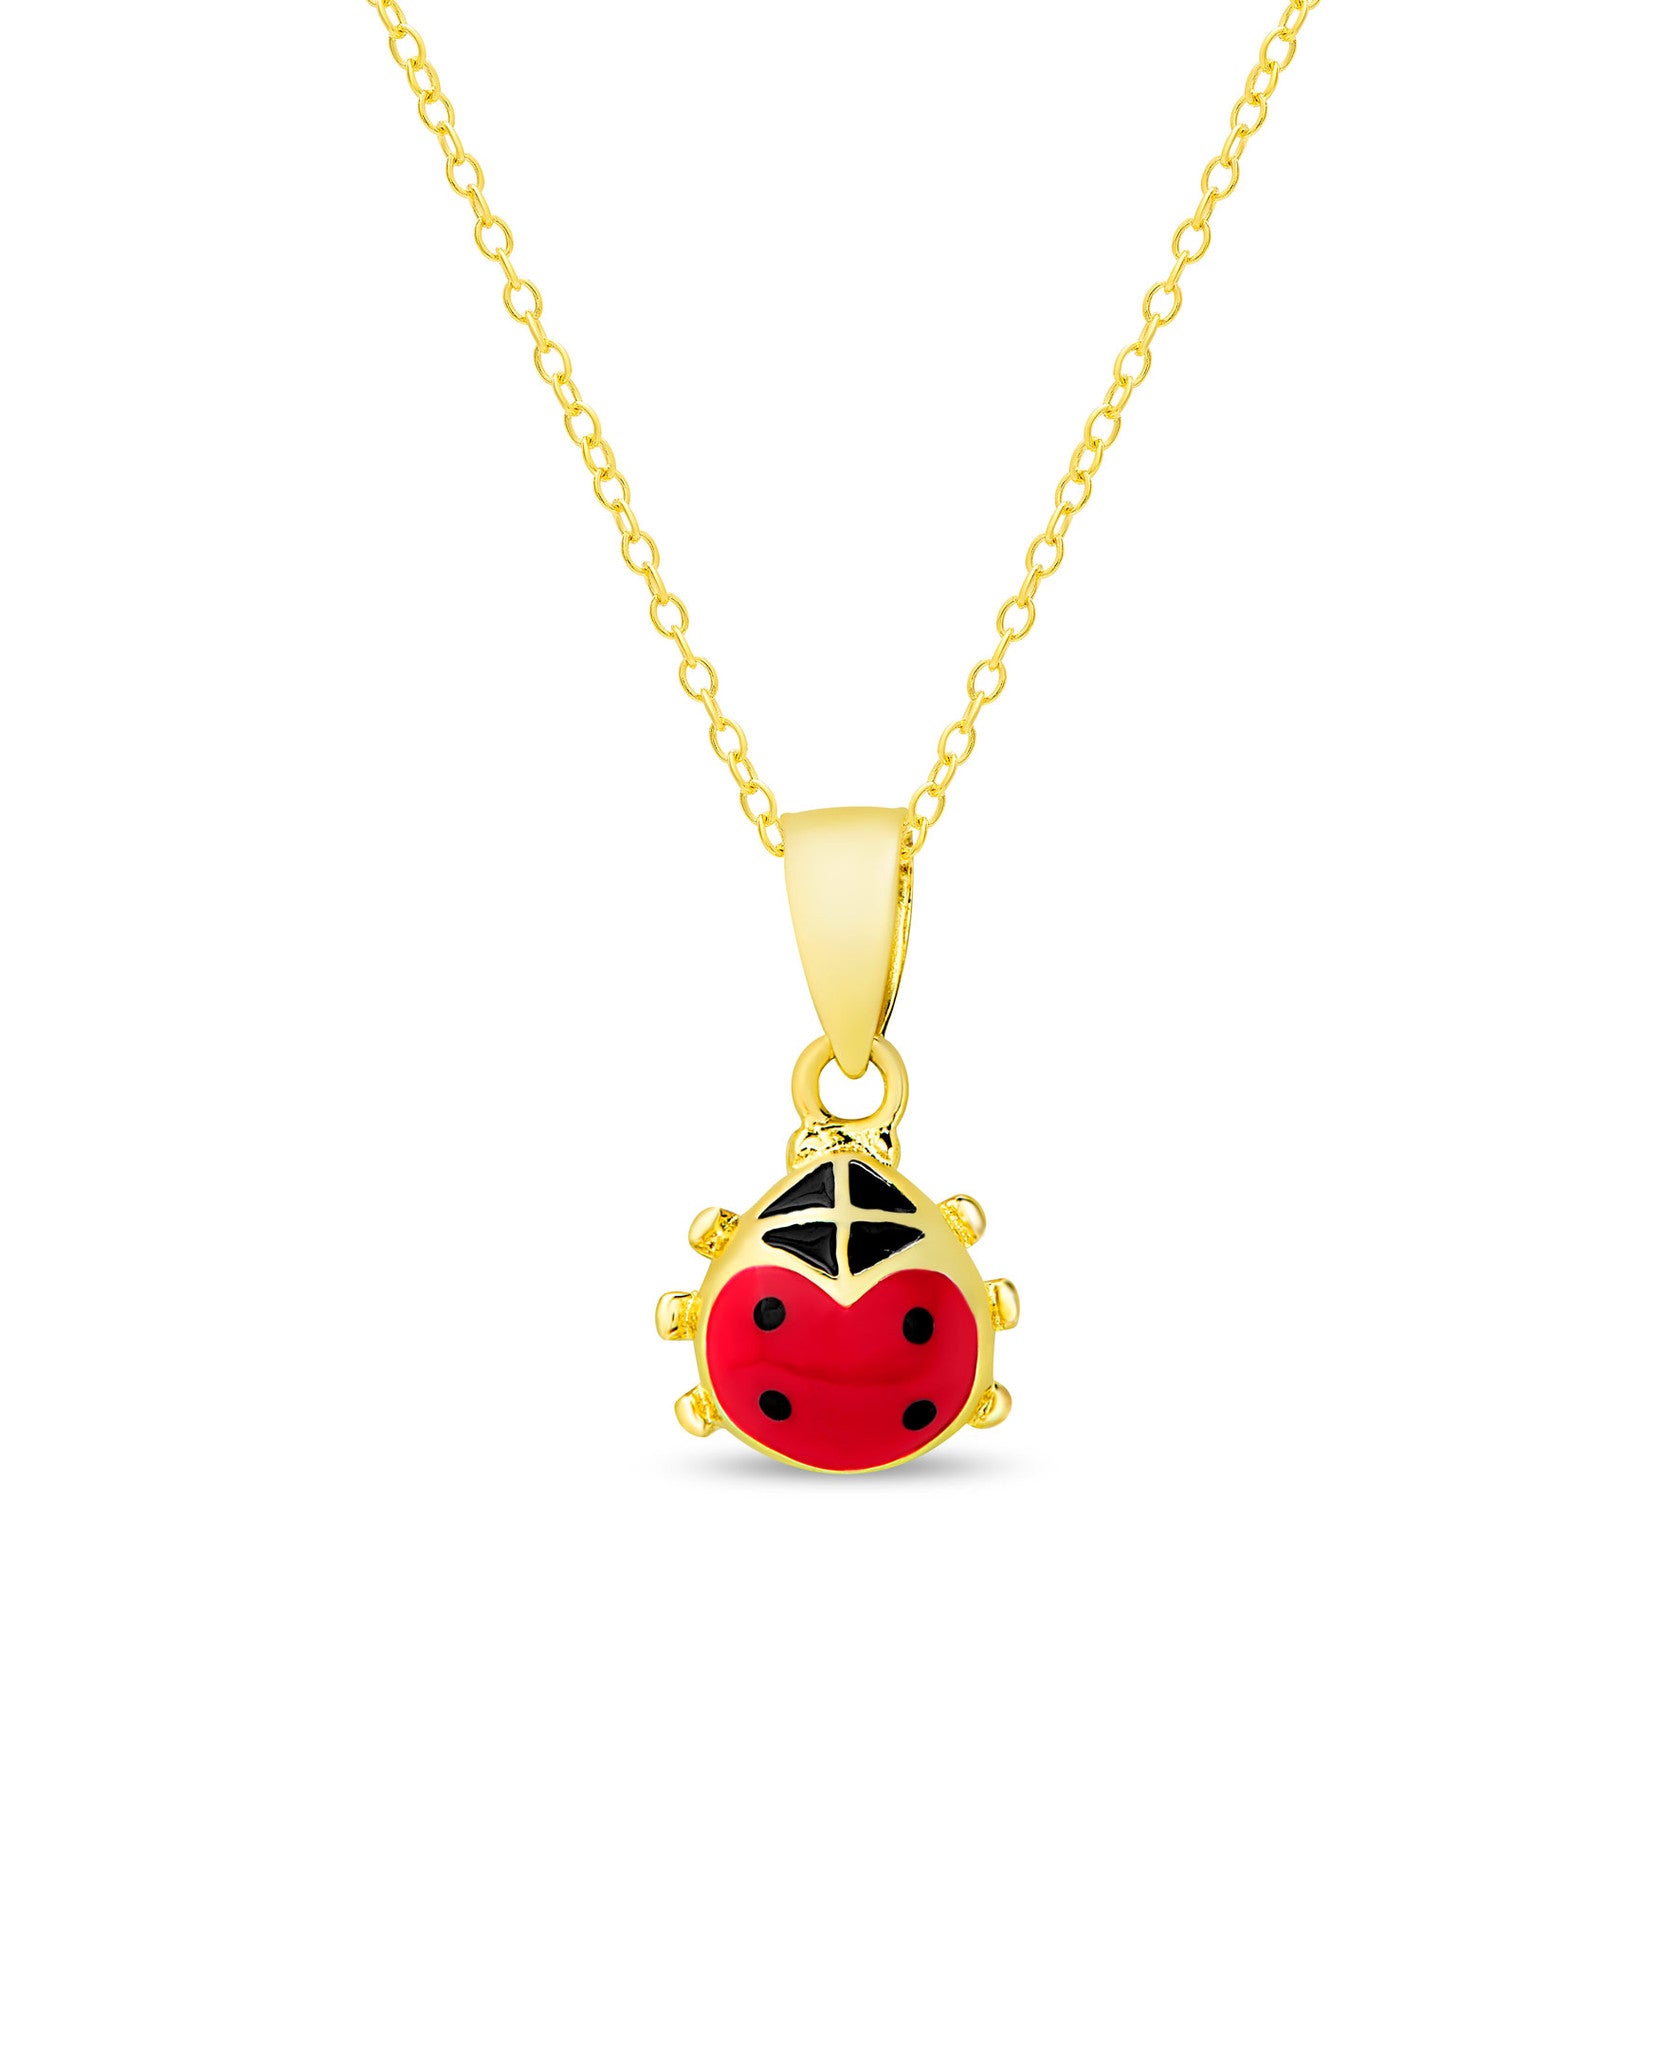 14k Solid Gold Ladybug Charm, 21mm x 13mm, 14k Gold 3D Ladybug Pendant -  PT504 | eBay